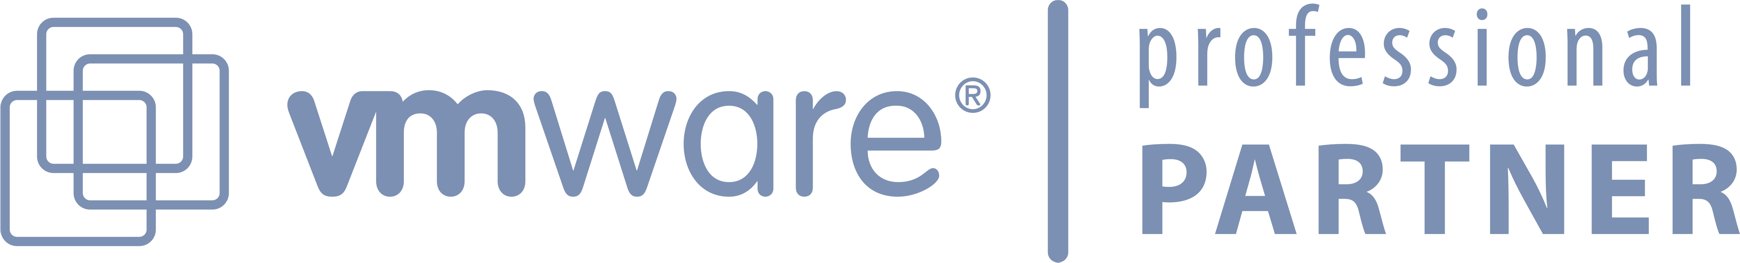 VMware Professional Partner Logo